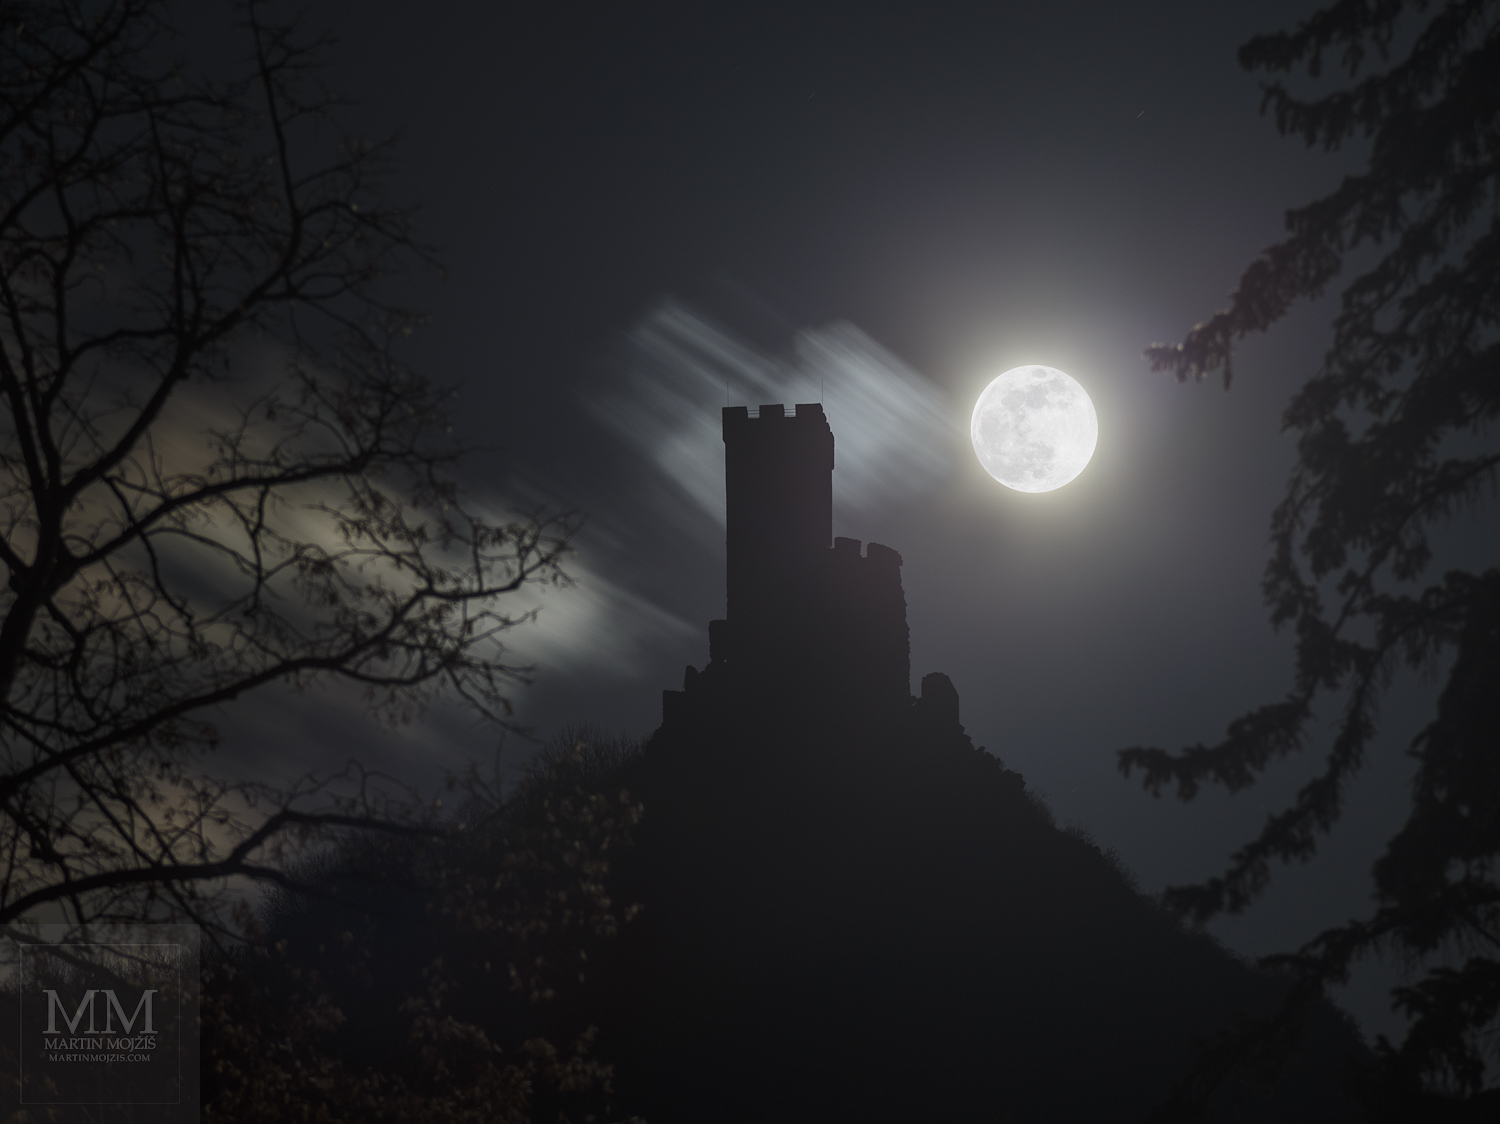 Velkoformátová umělecká fotografie zříceniny hradu a Měsíce v úplňku. Martin Mojžíš.